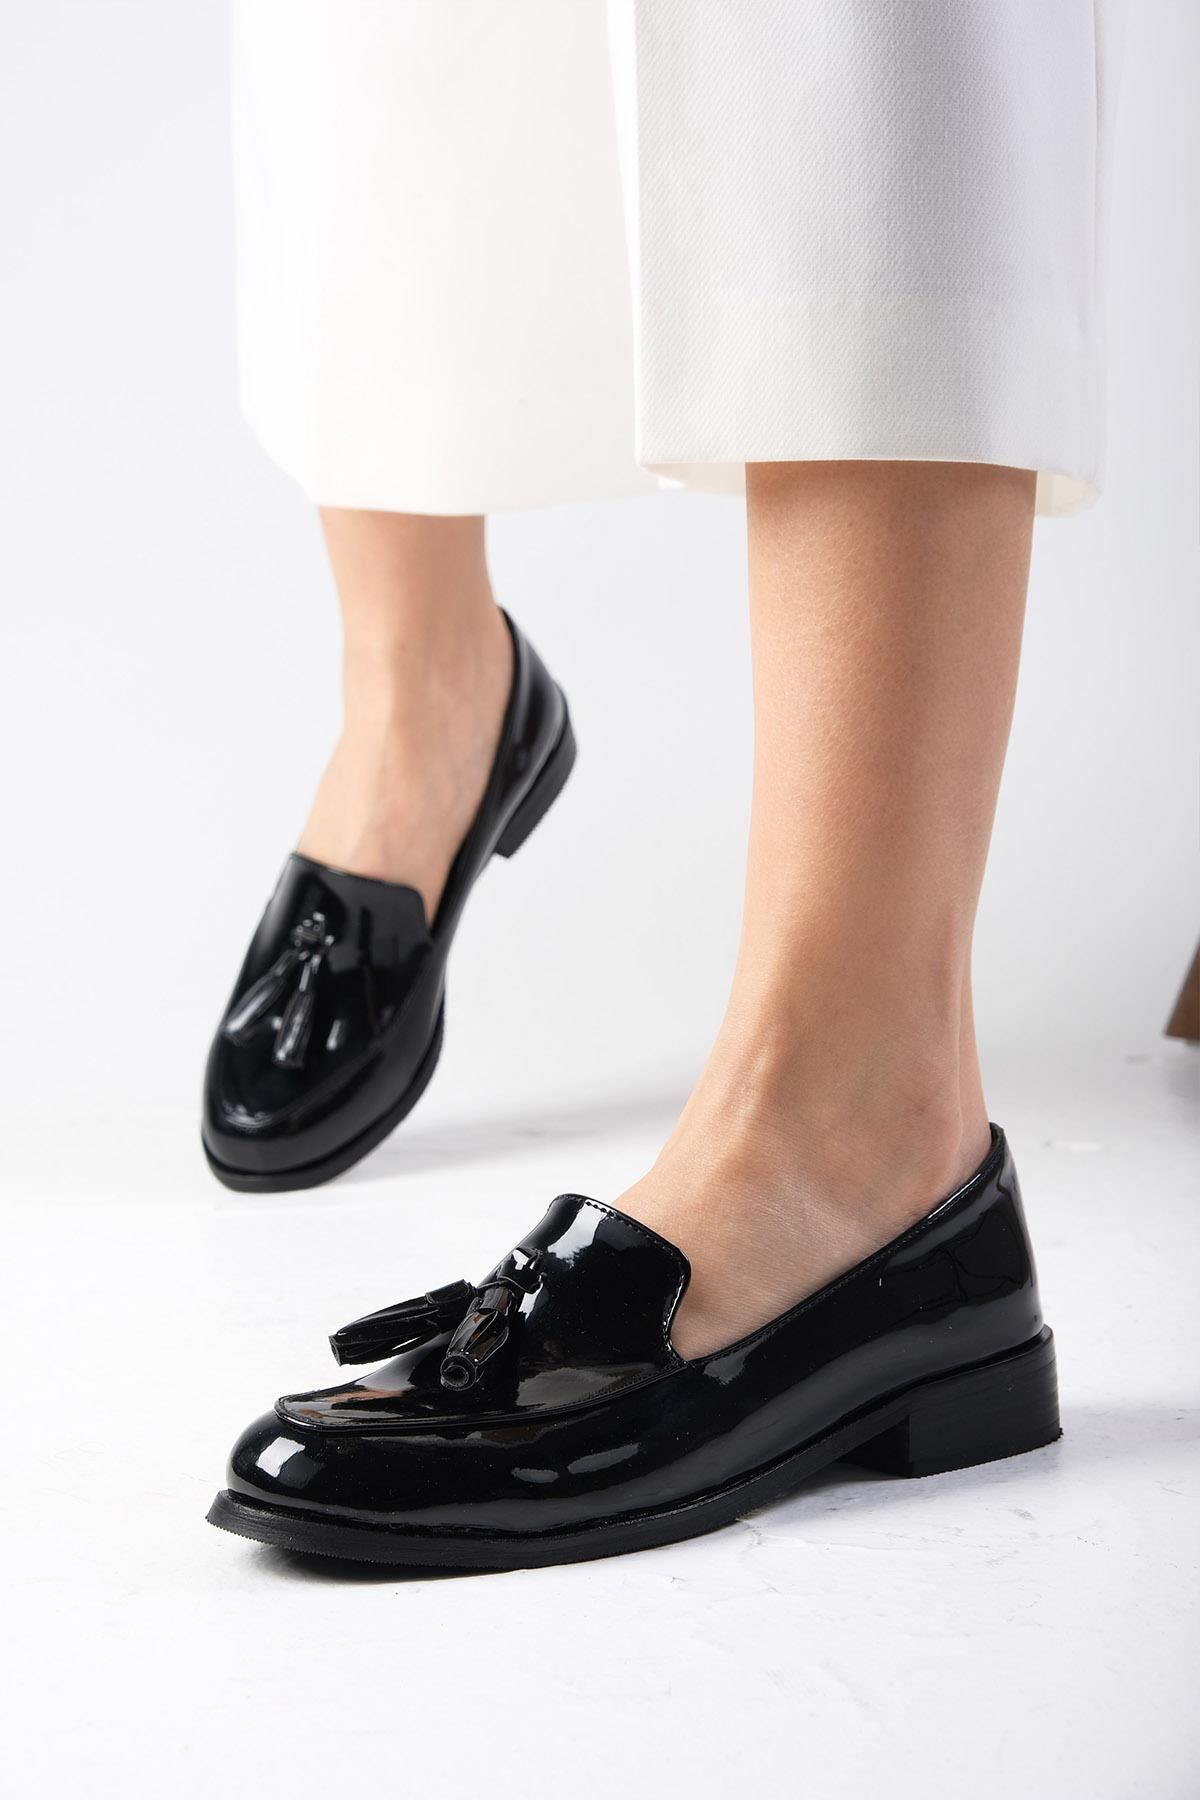 Mio Gusto Iris Siyah Renk Rugan Kadın Oxford Günlük Düz Ayakkabı